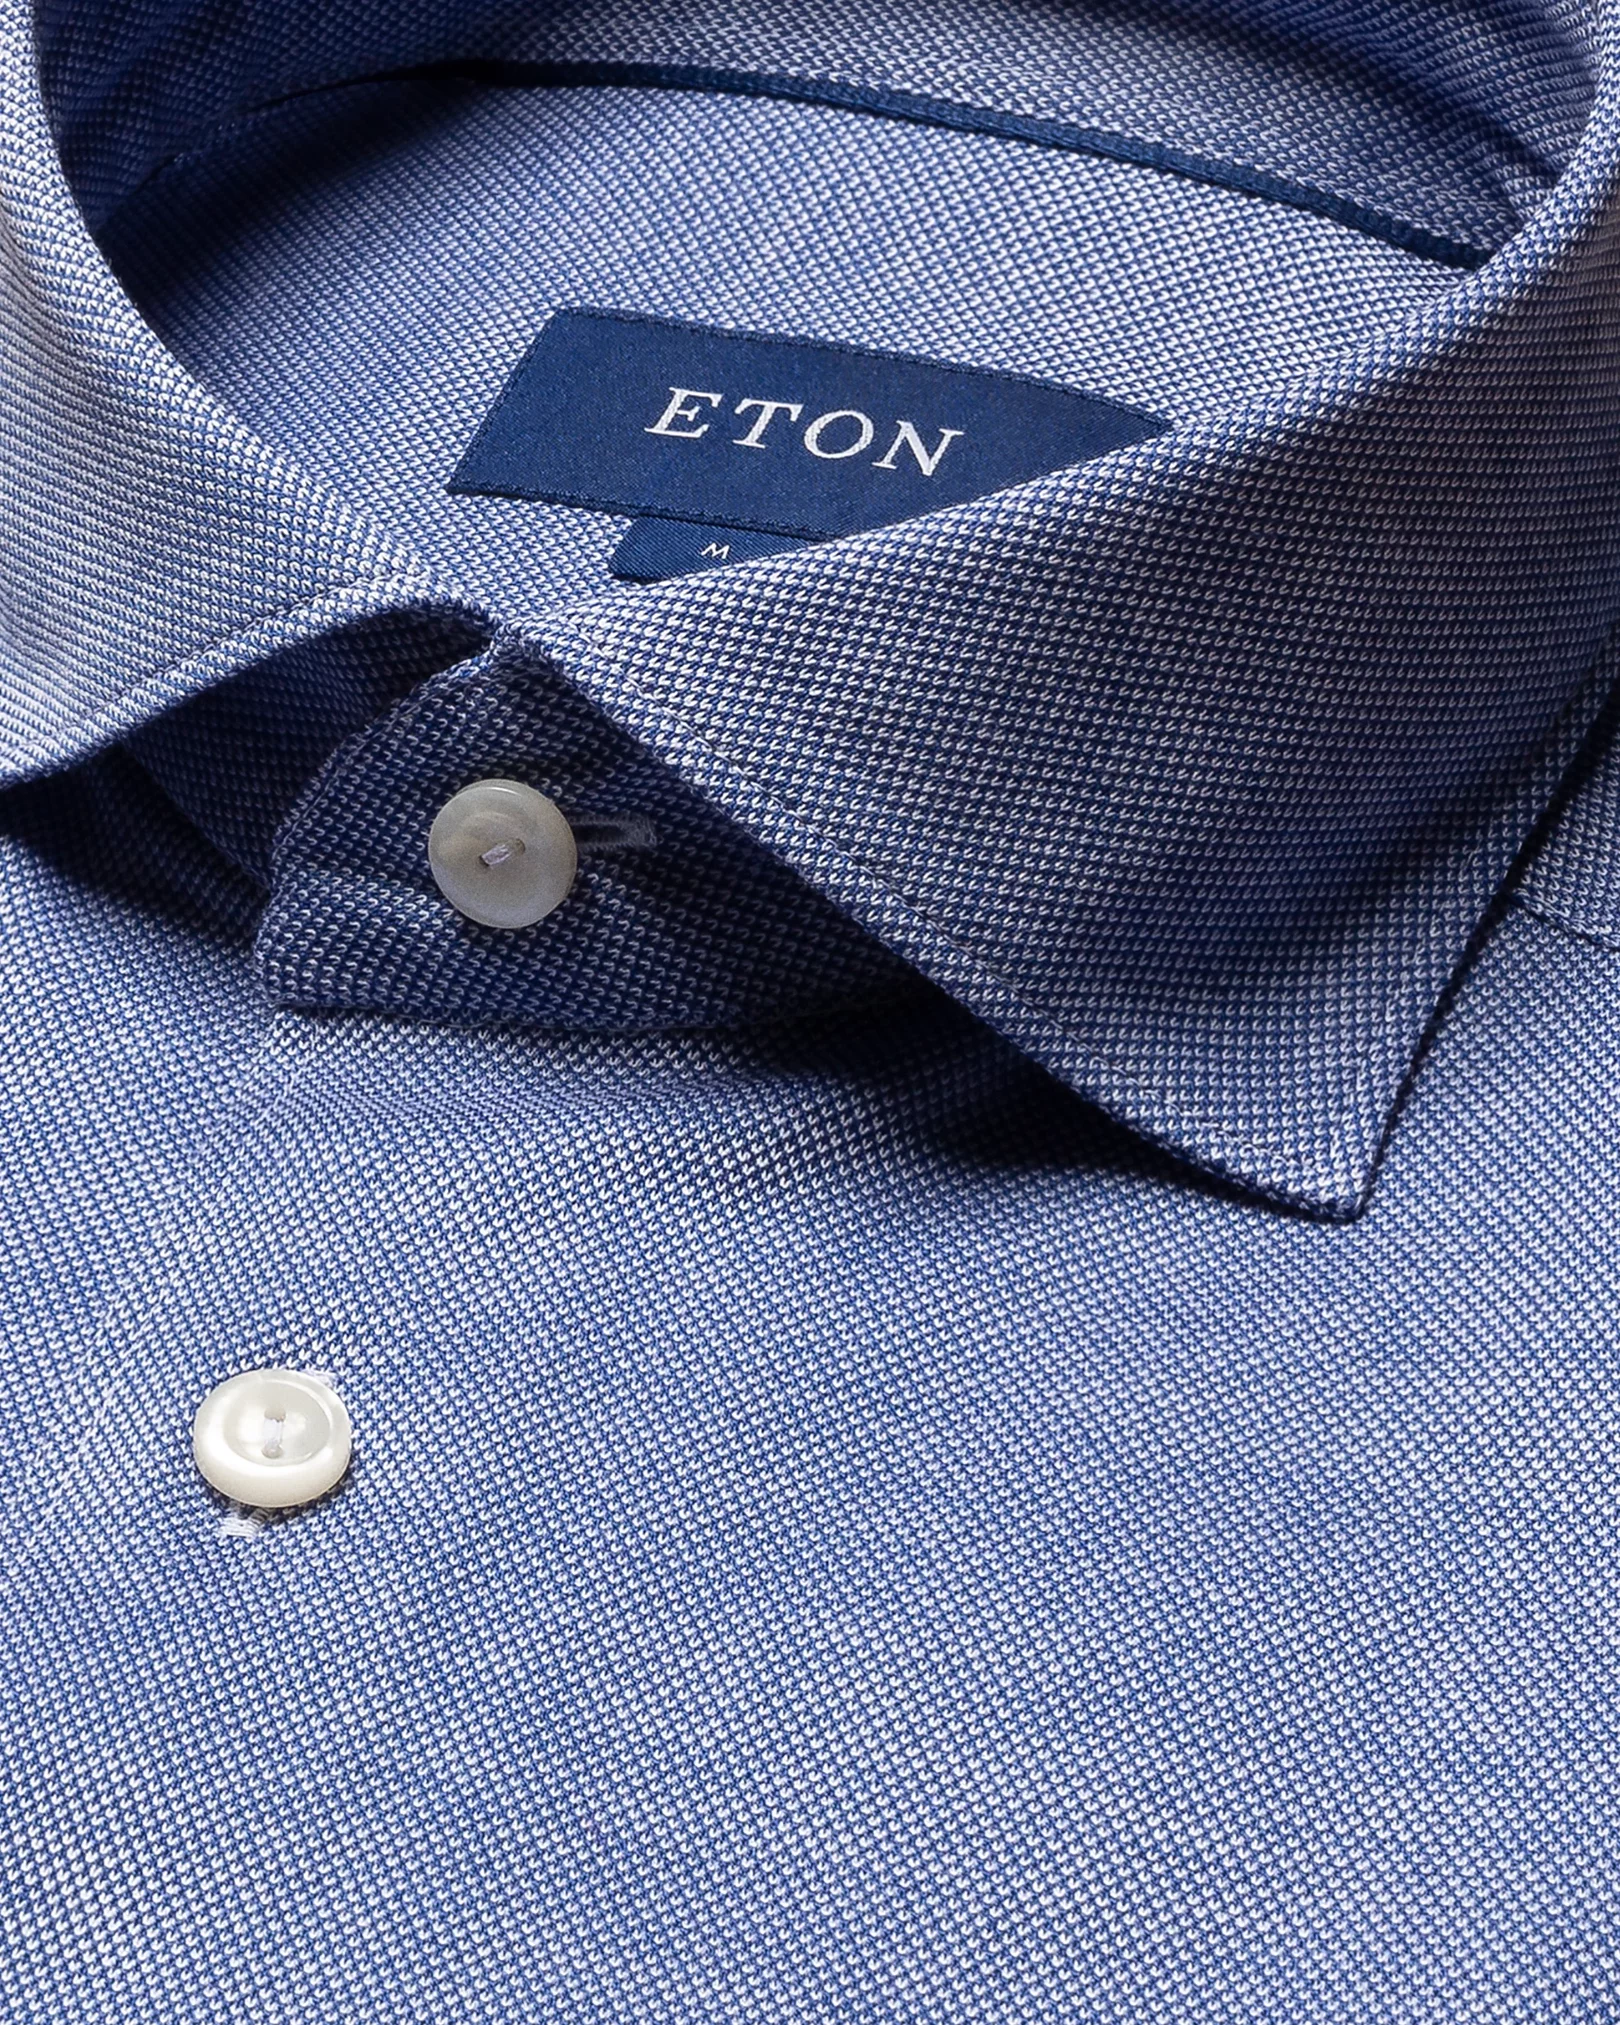 Eton - dark blue jersey widespread